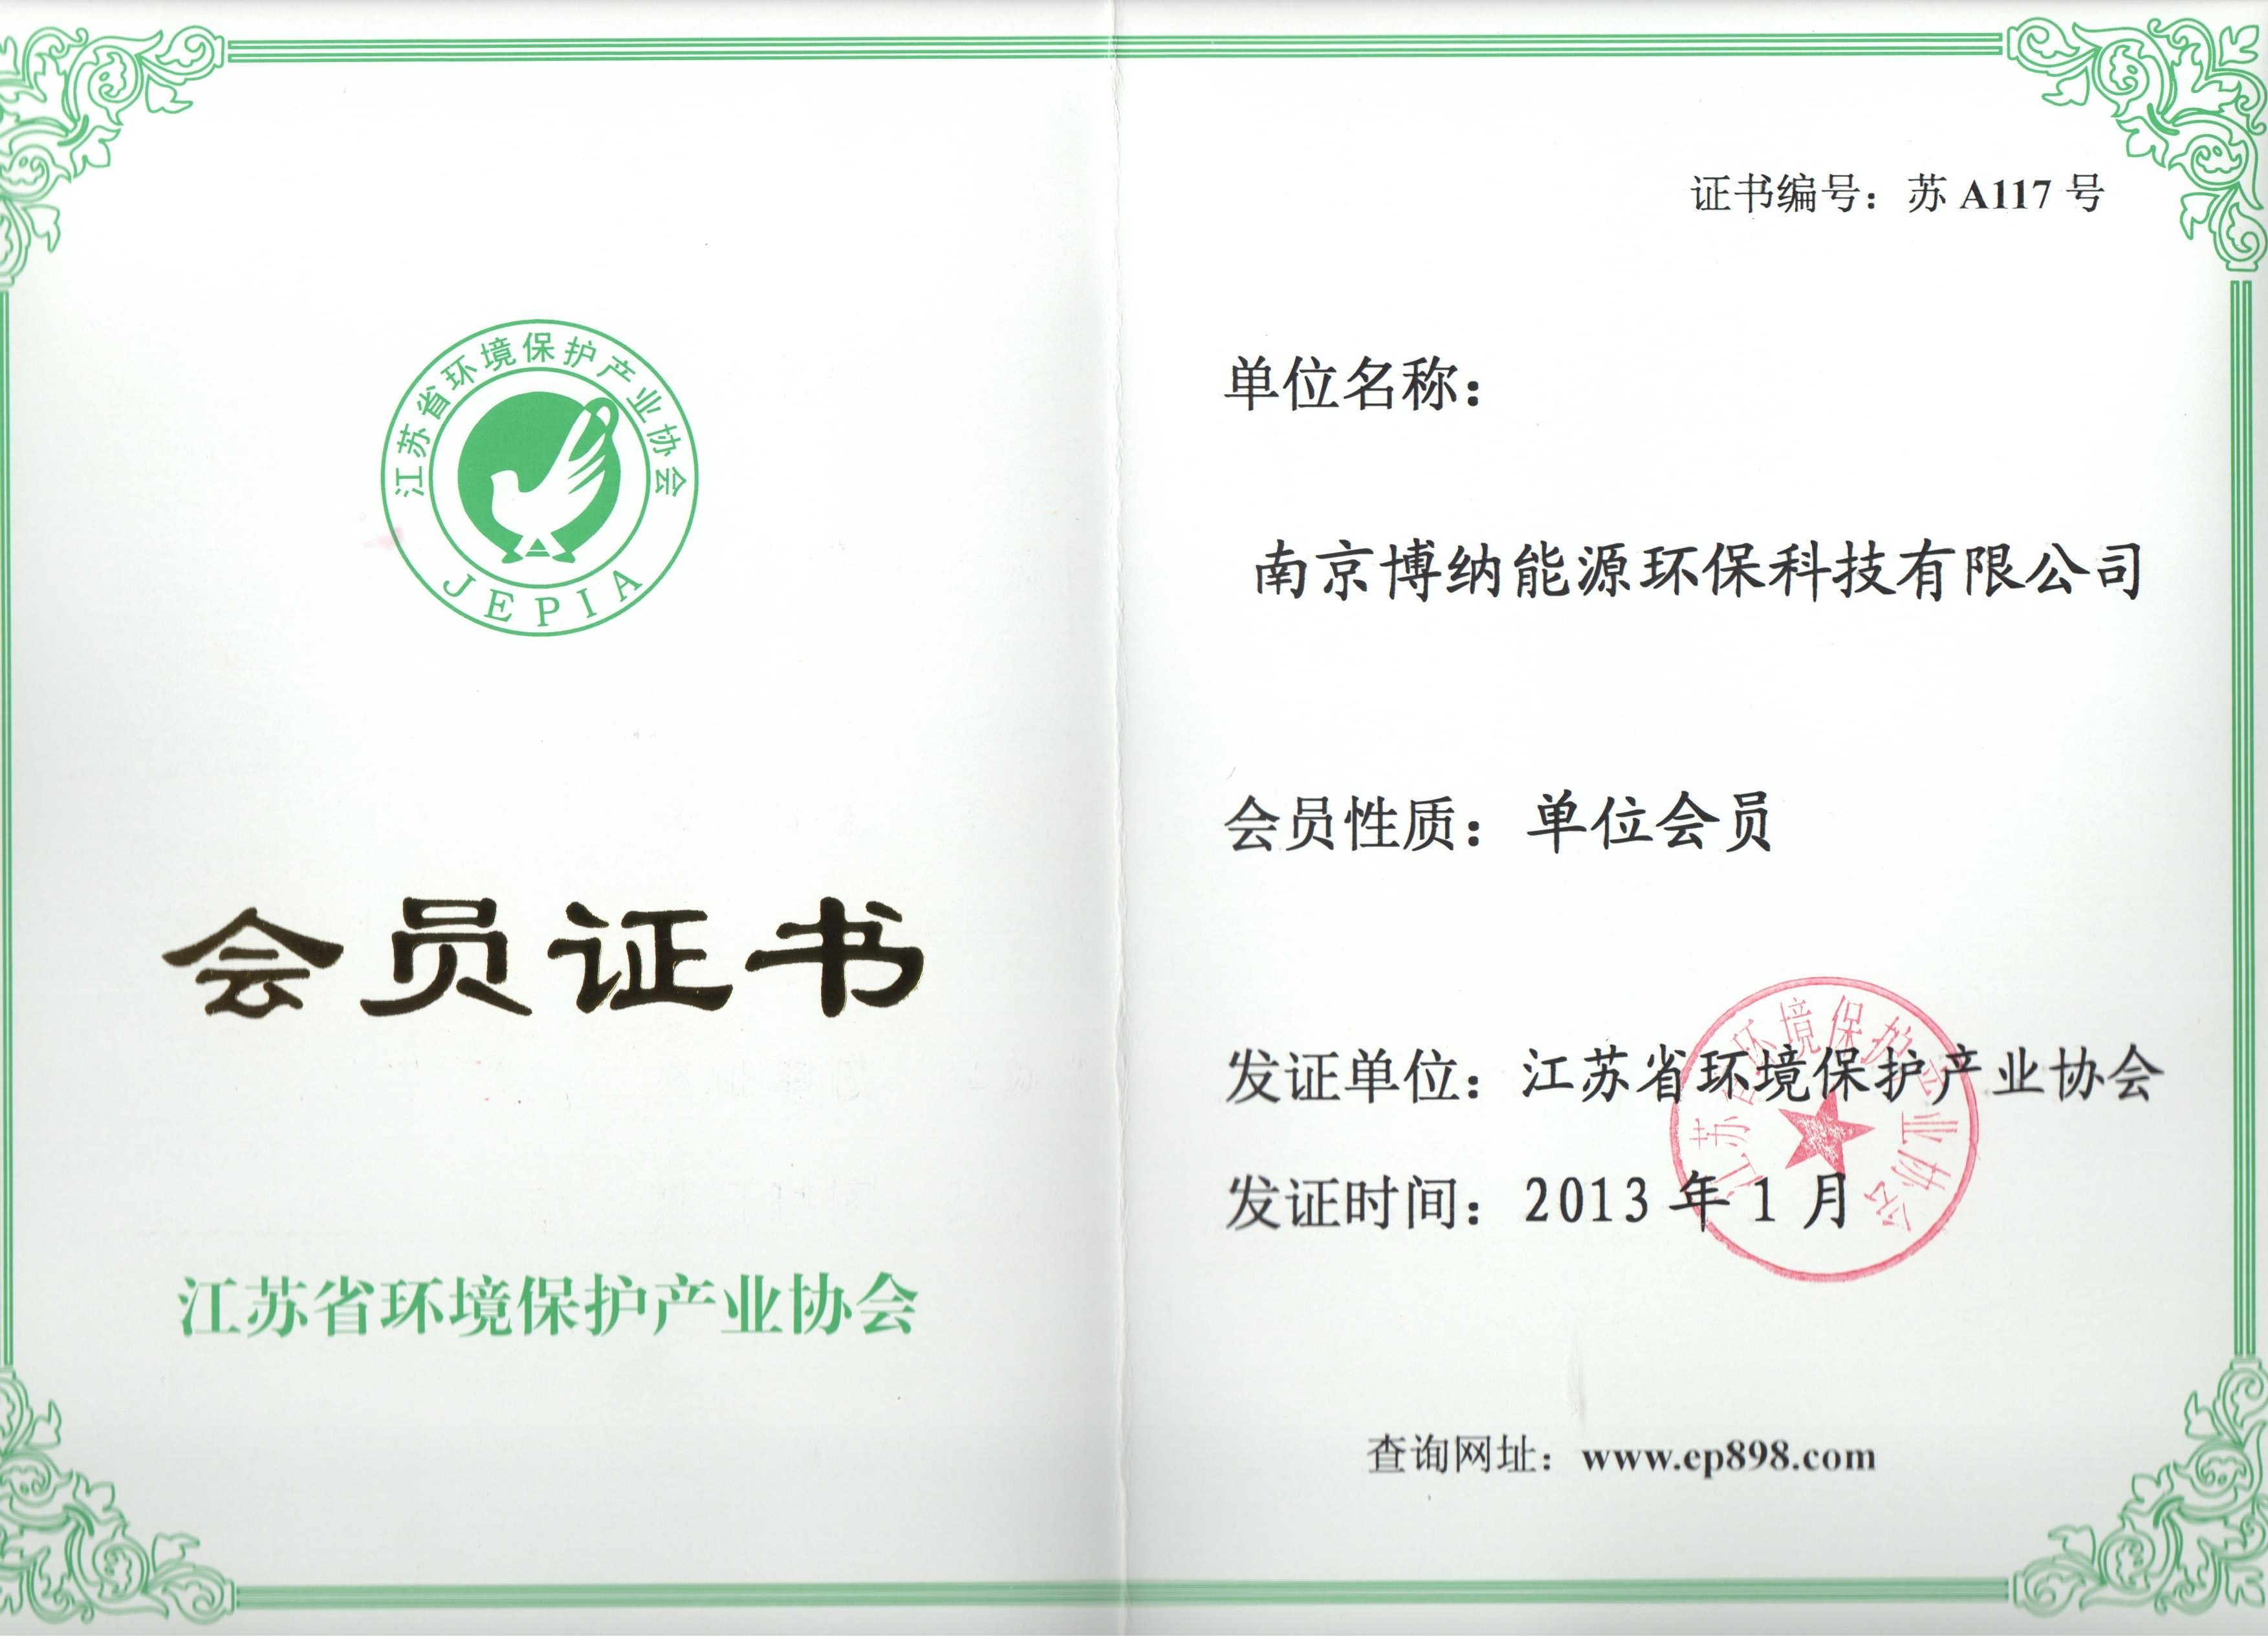 博纳科技成为江苏环保产业协会会员单位